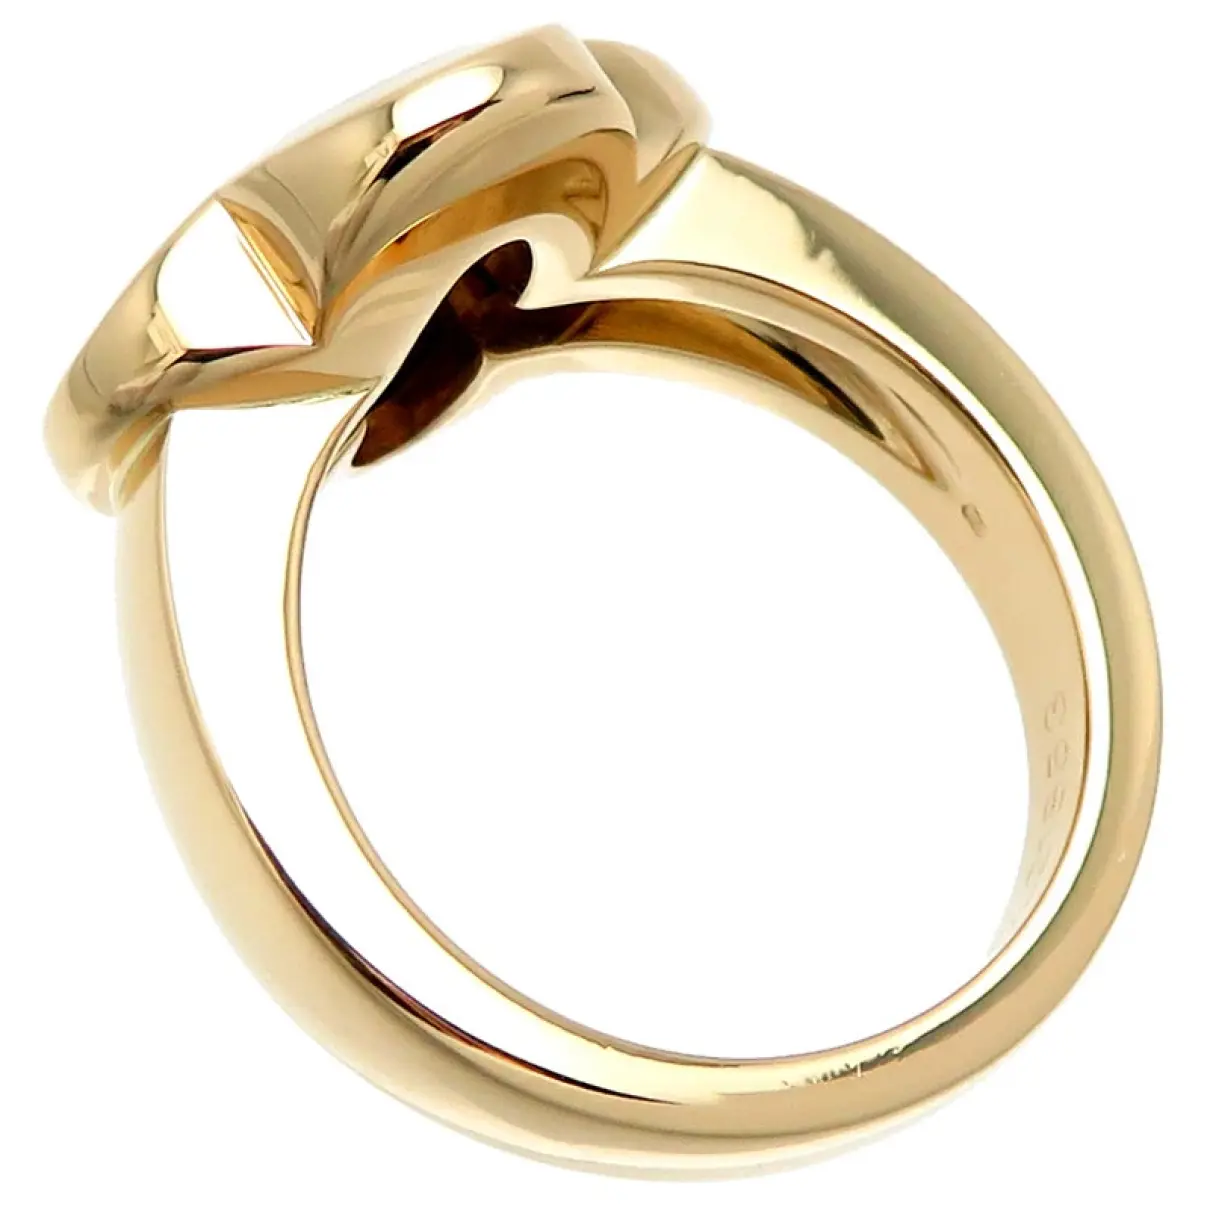 Buy Van Cleef & Arpels Yellow gold ring online